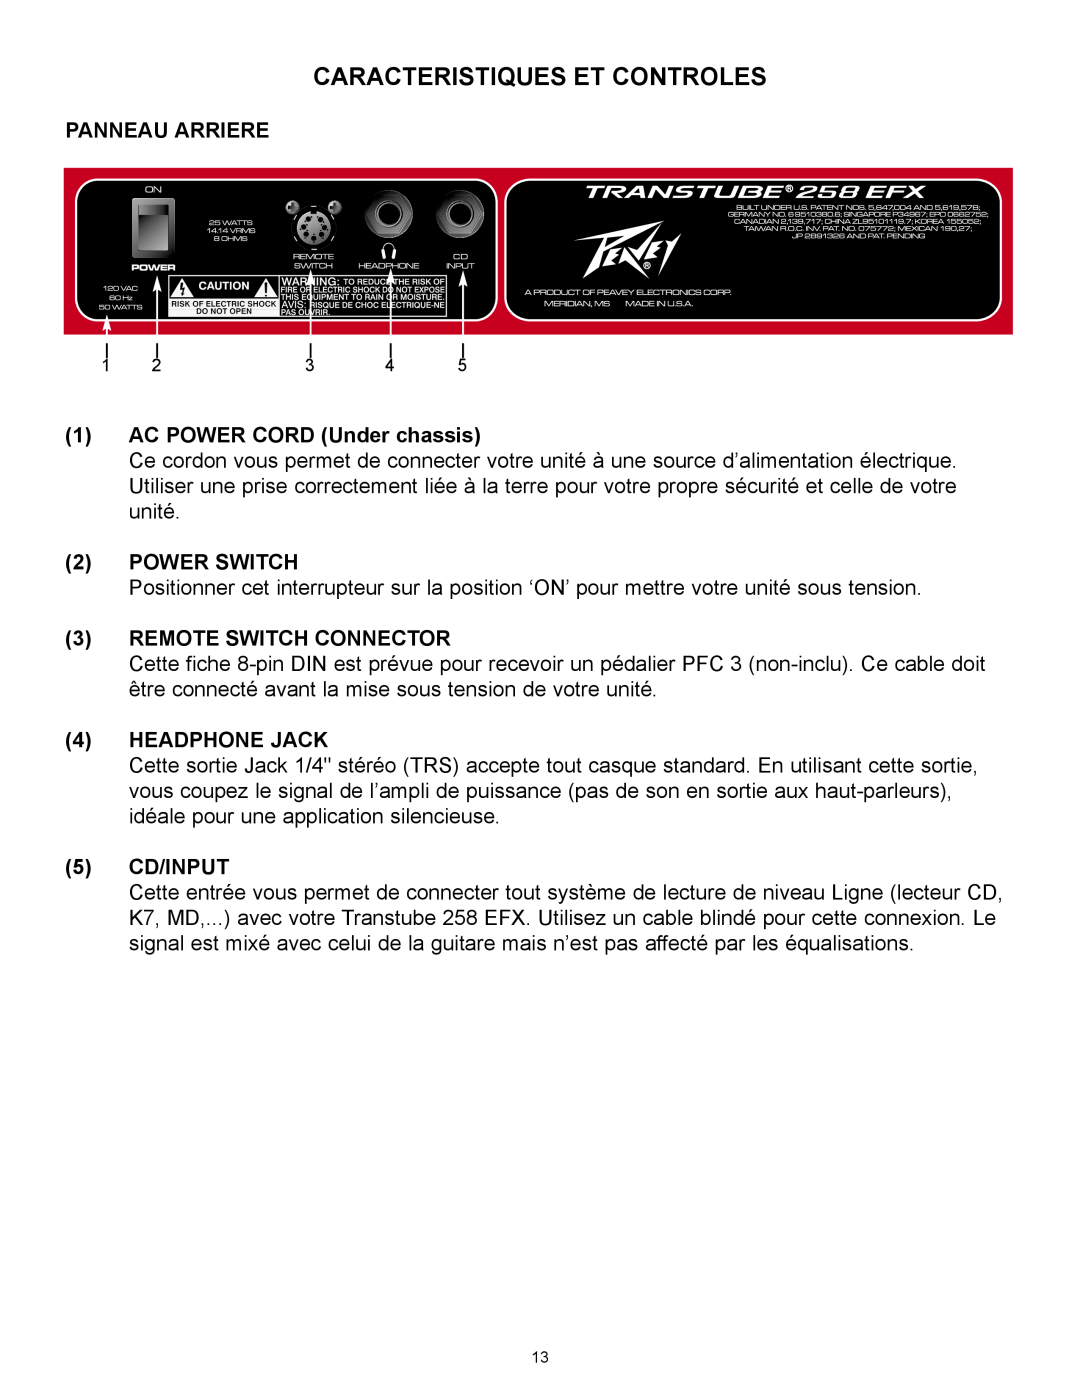 Peavey 258 EFX Caracteristiques Et Controles, Panneau Arriere, 1AC POWER CORD Under chassis, 2POWER SWITCH, 5CD/INPUT 